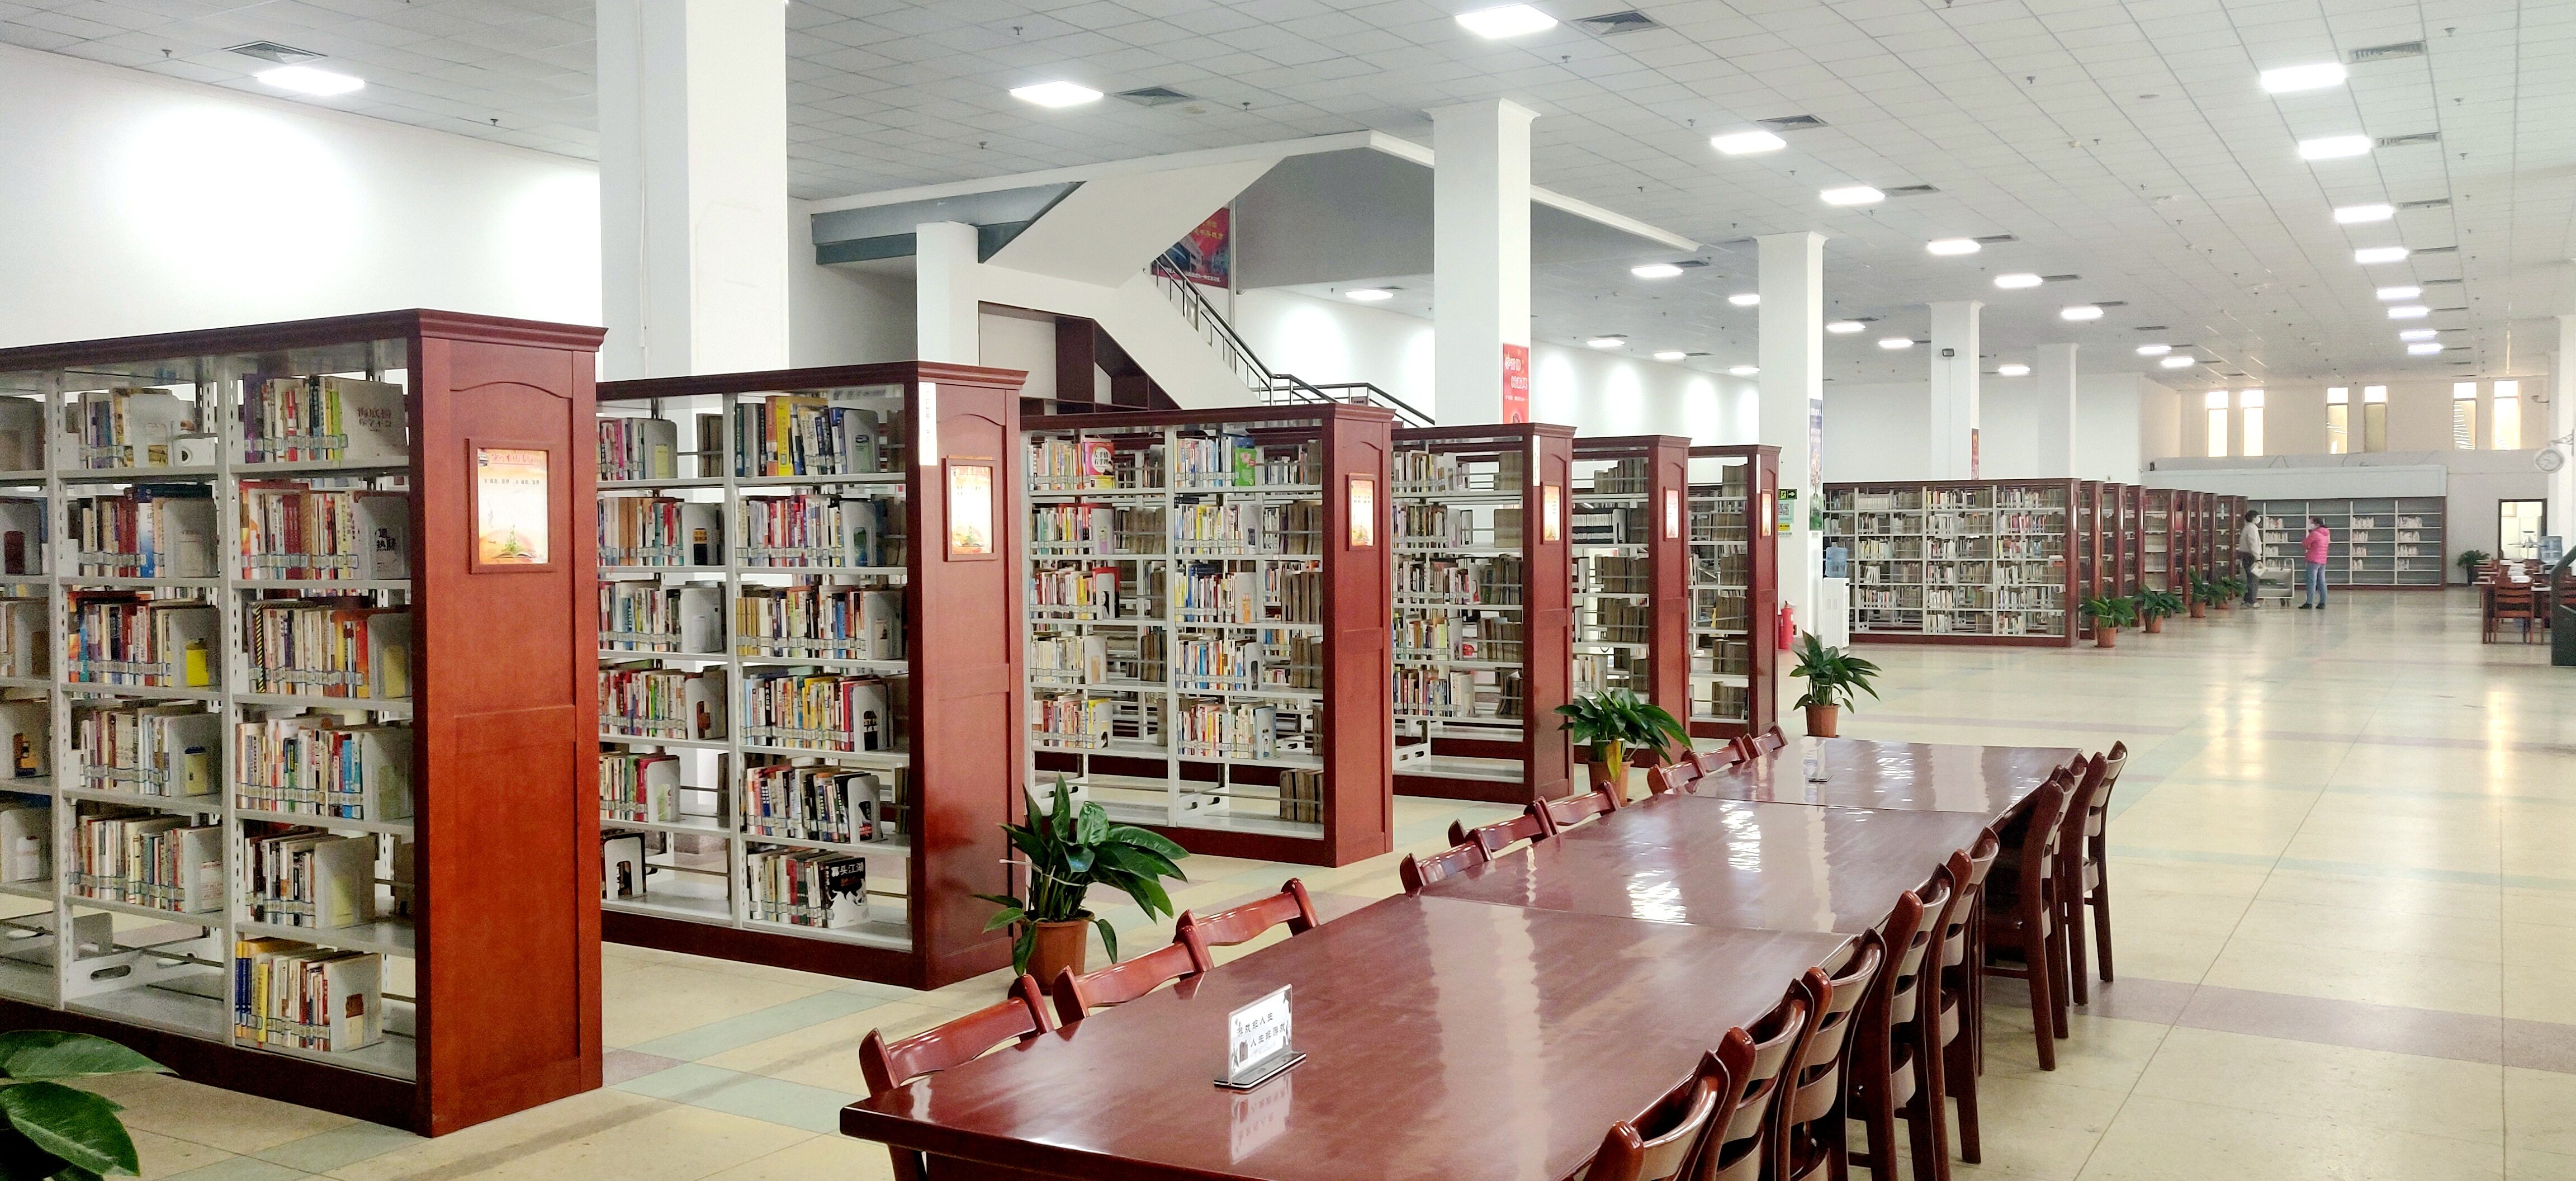 德州市图书馆有序恢复开放